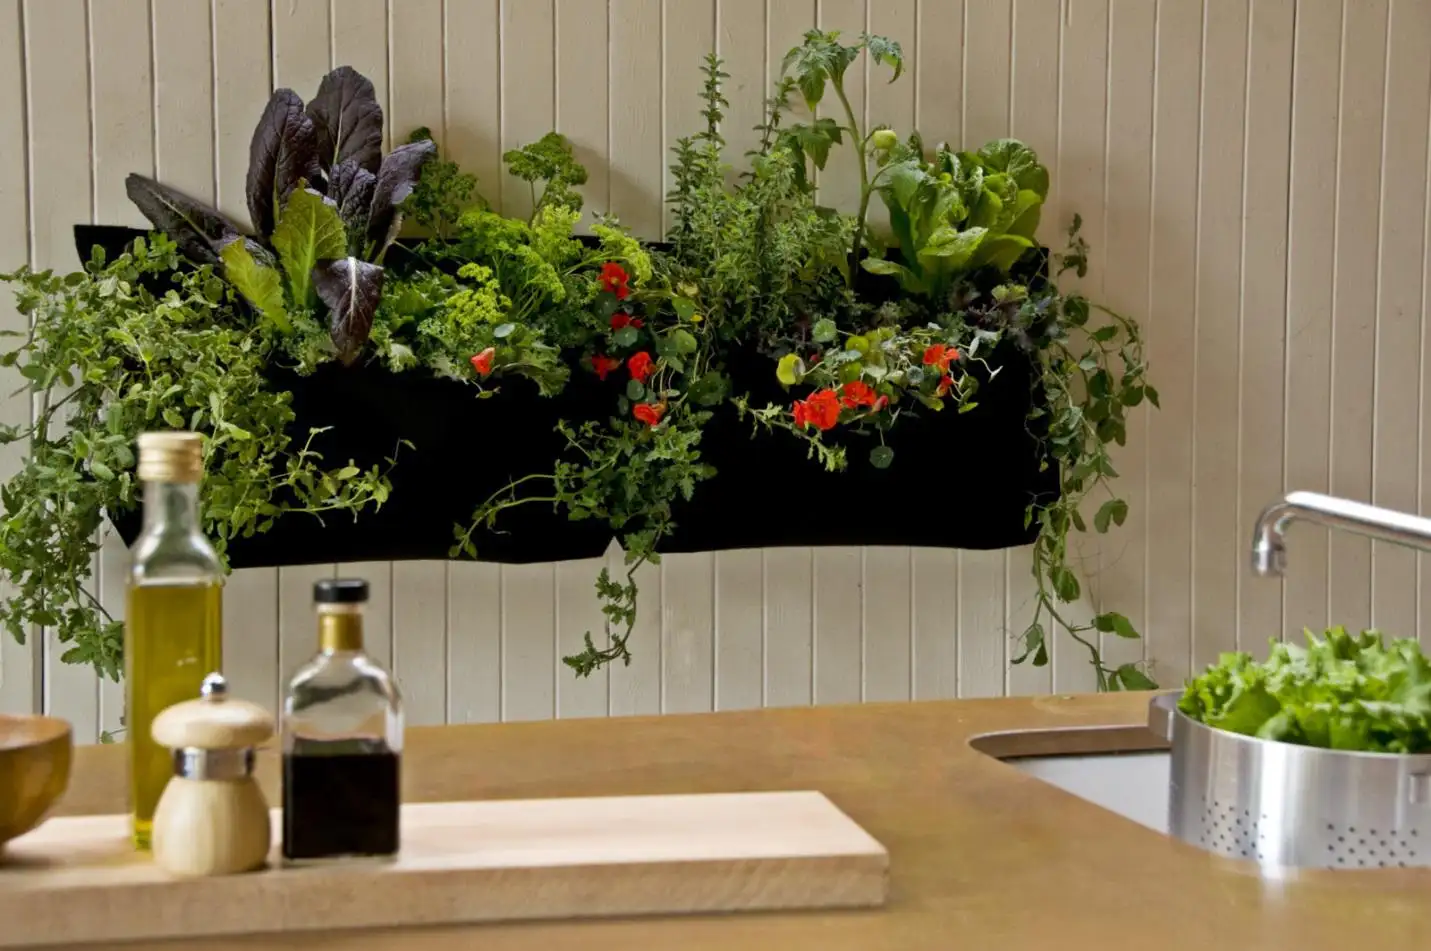 Kitchen plants decor